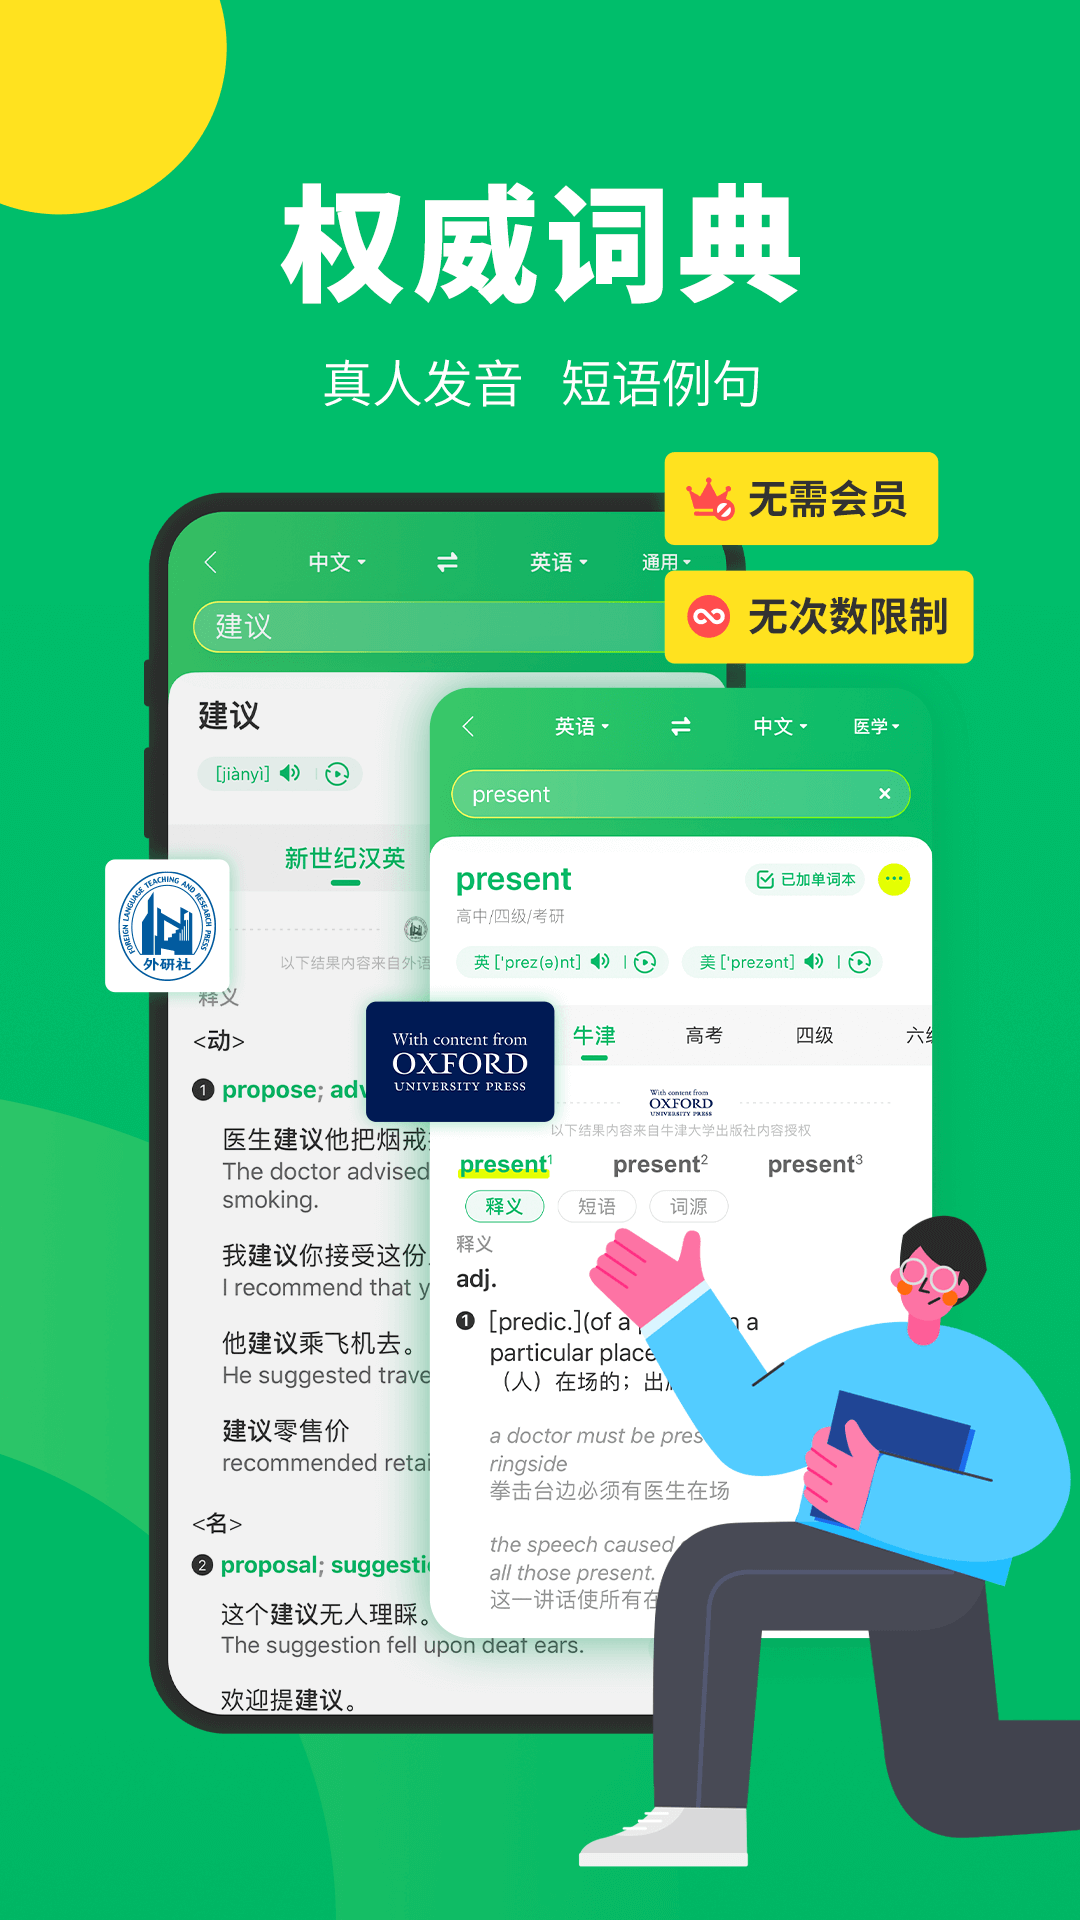 搜狗翻译手机软件app截图